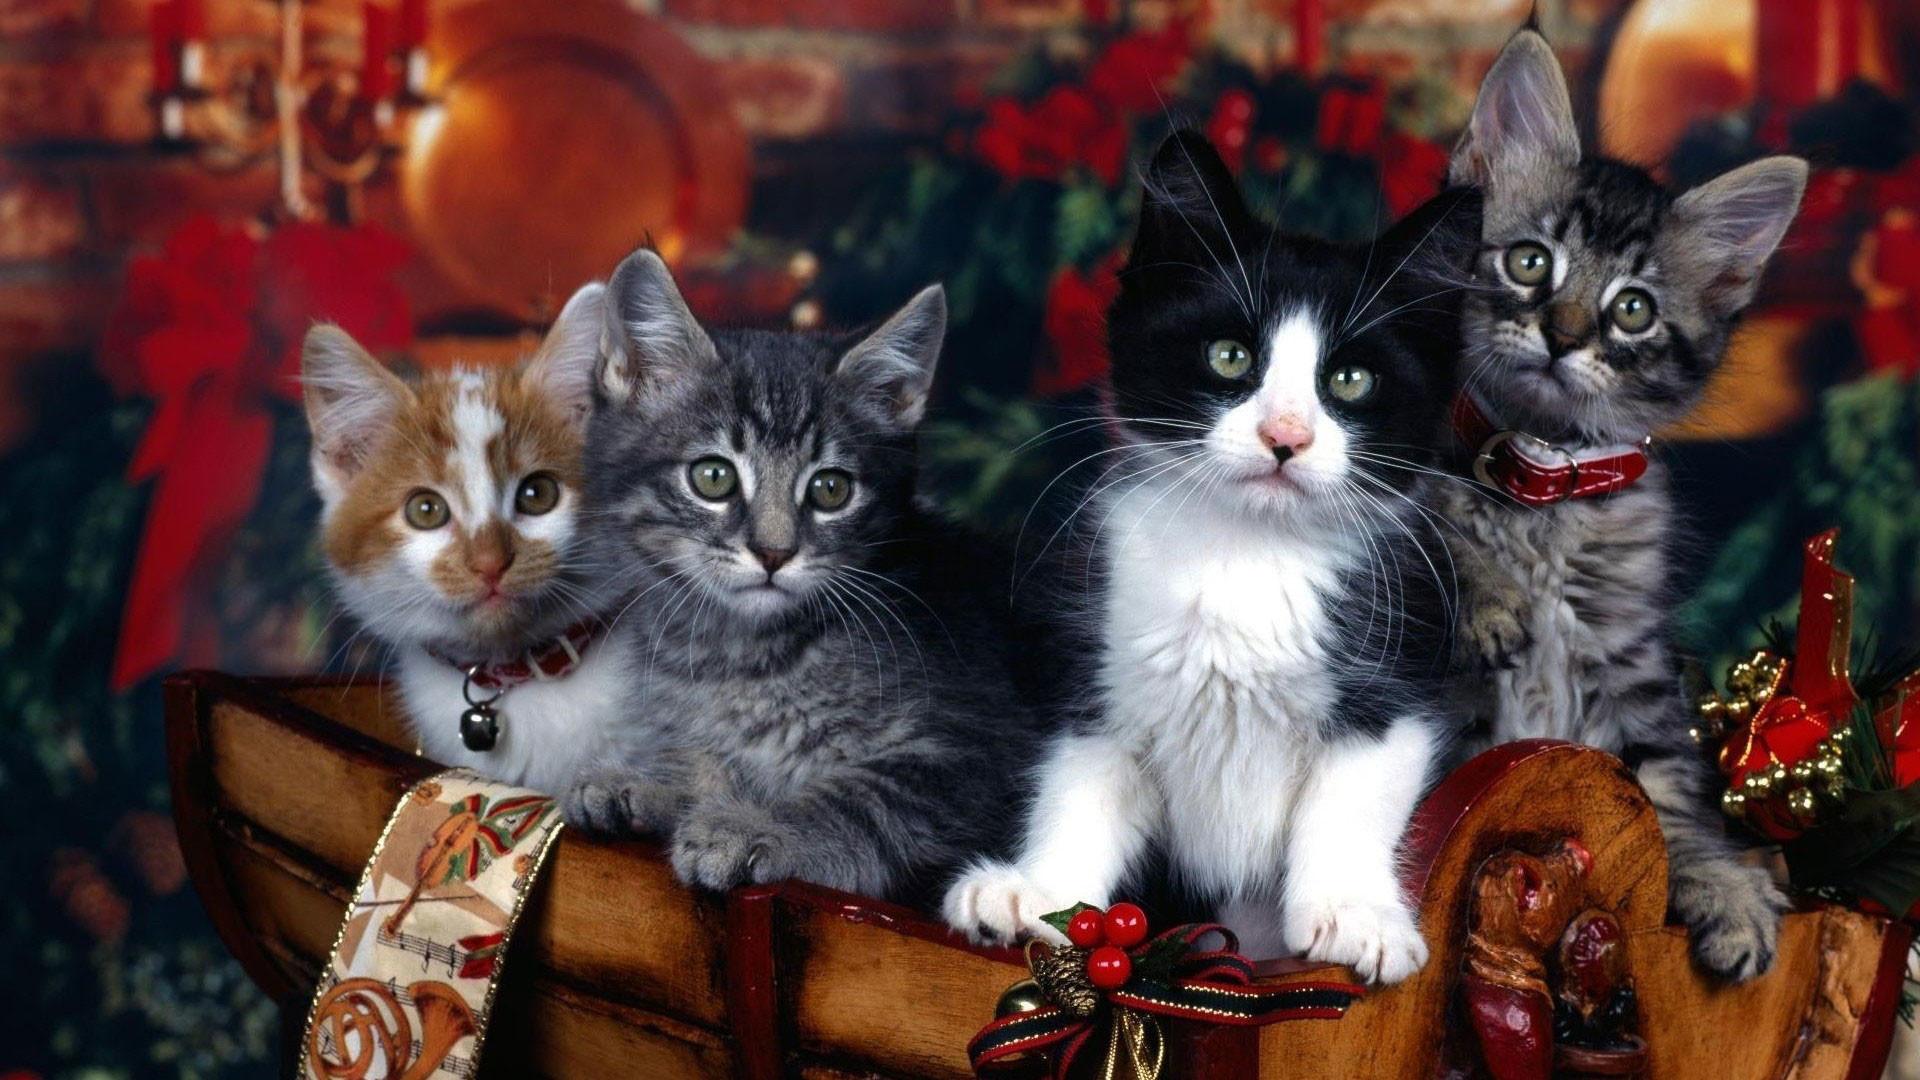 Mèo là loài vật đáng yêu và đáng yêu nhất trên thế giới đúng không? Hãy thêm một chút màu sắc vào mùa Giáng sinh của bạn bằng cách tải về hình nền mèo Giáng sinh đáng yêu này. Bạn sẽ cảm thấy vui tươi và thoải mái khi nhìn thấy những chú mèo này và thưởng thức mùa lễ hội sớm hơn bao giờ hết.